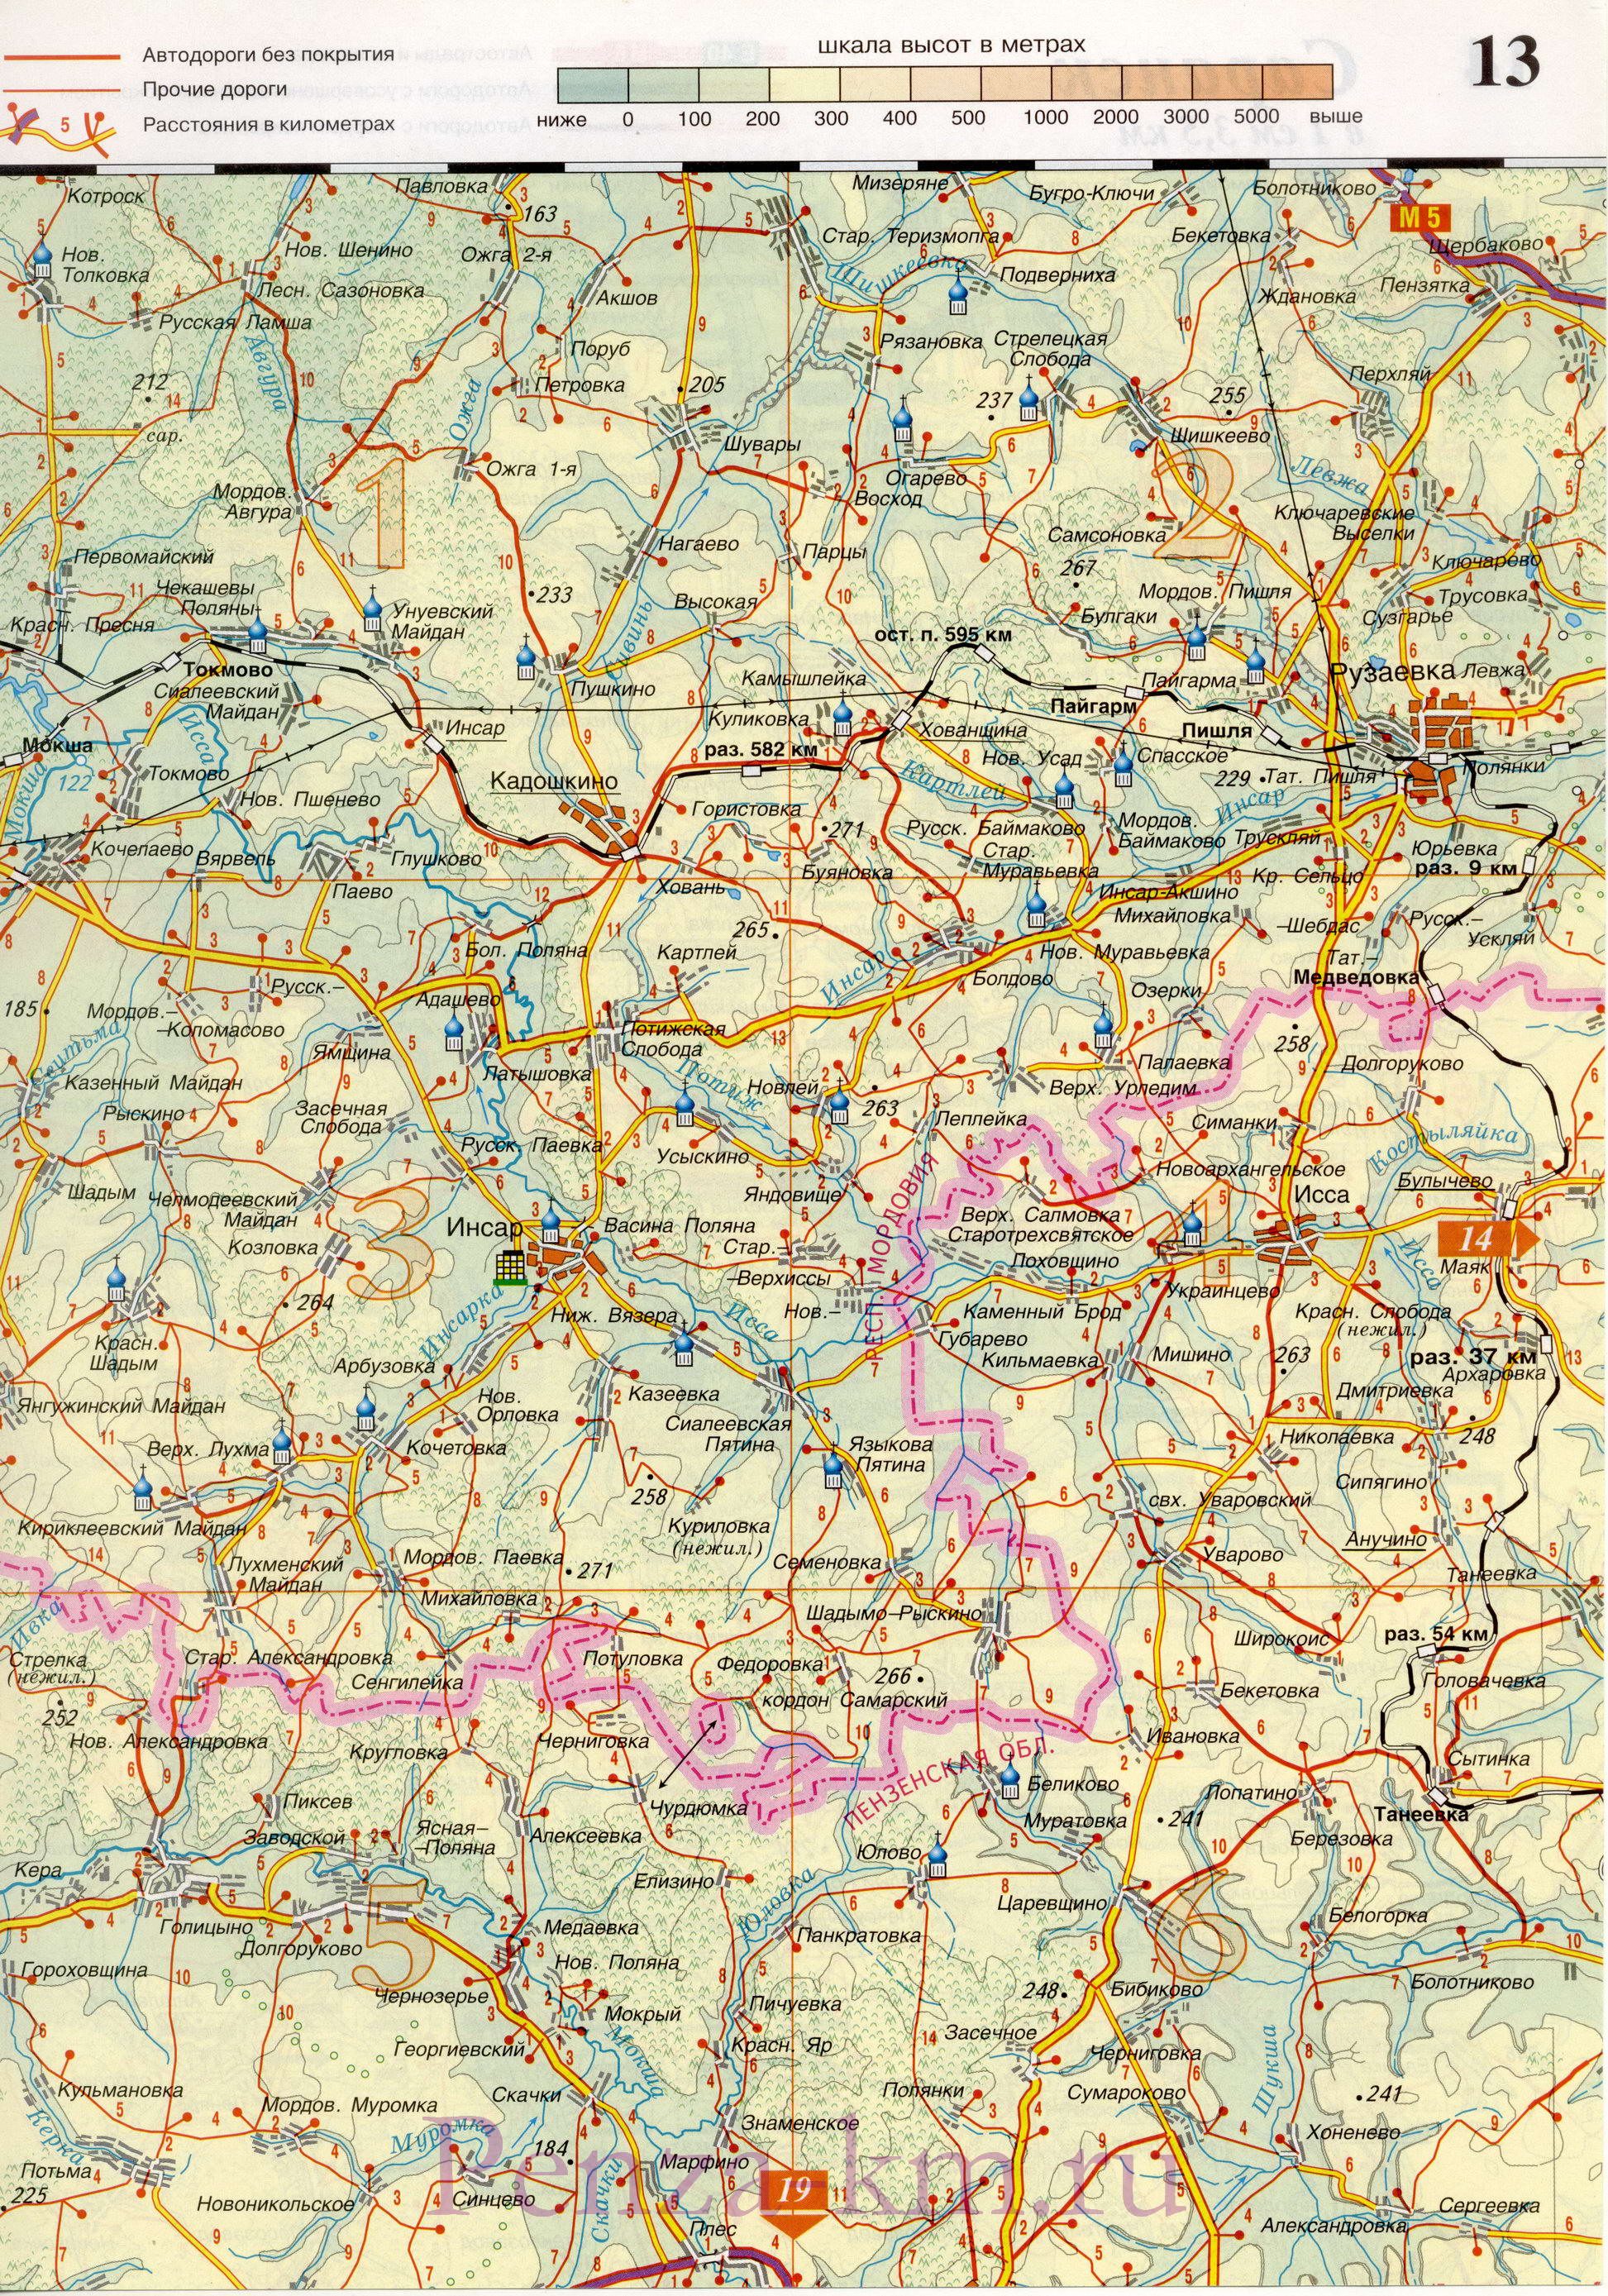  Пензенская область карта дорог. Подробная карта автодорог Пензенской области масштаба 1см:3,5км, C0 - 